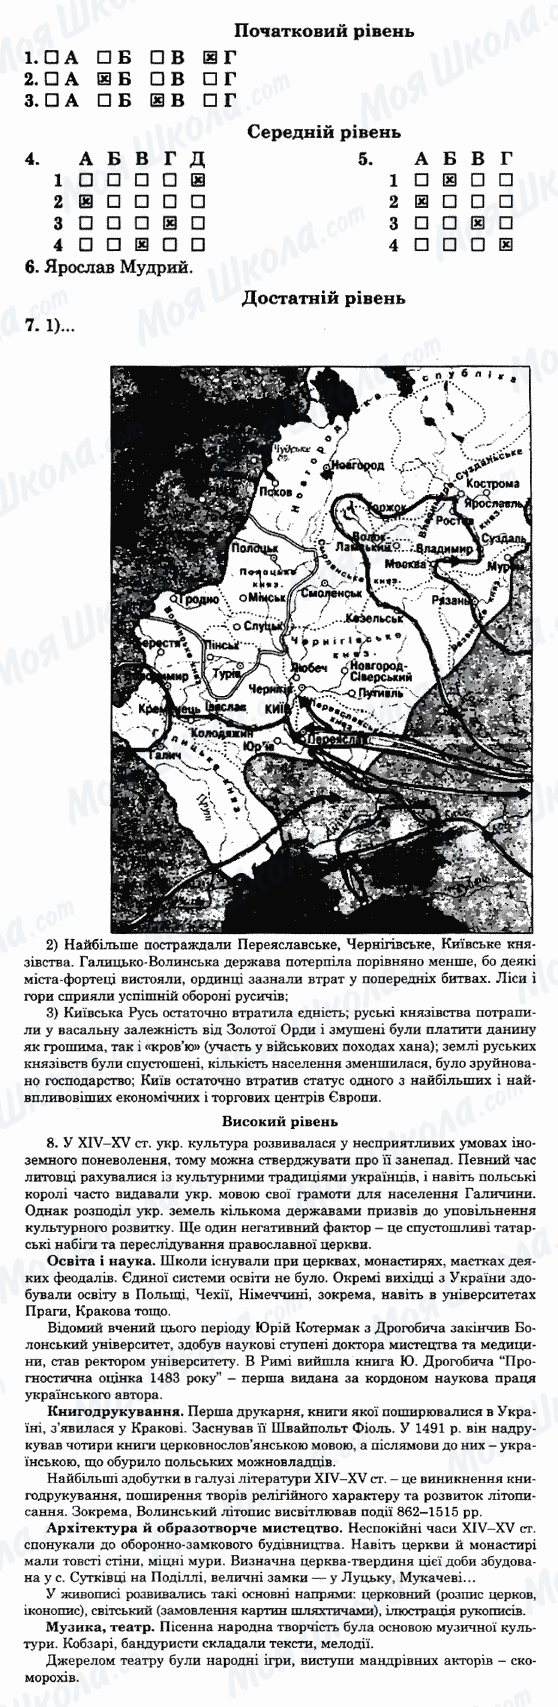 ГДЗ Історія України 7 клас сторінка 34-варіант